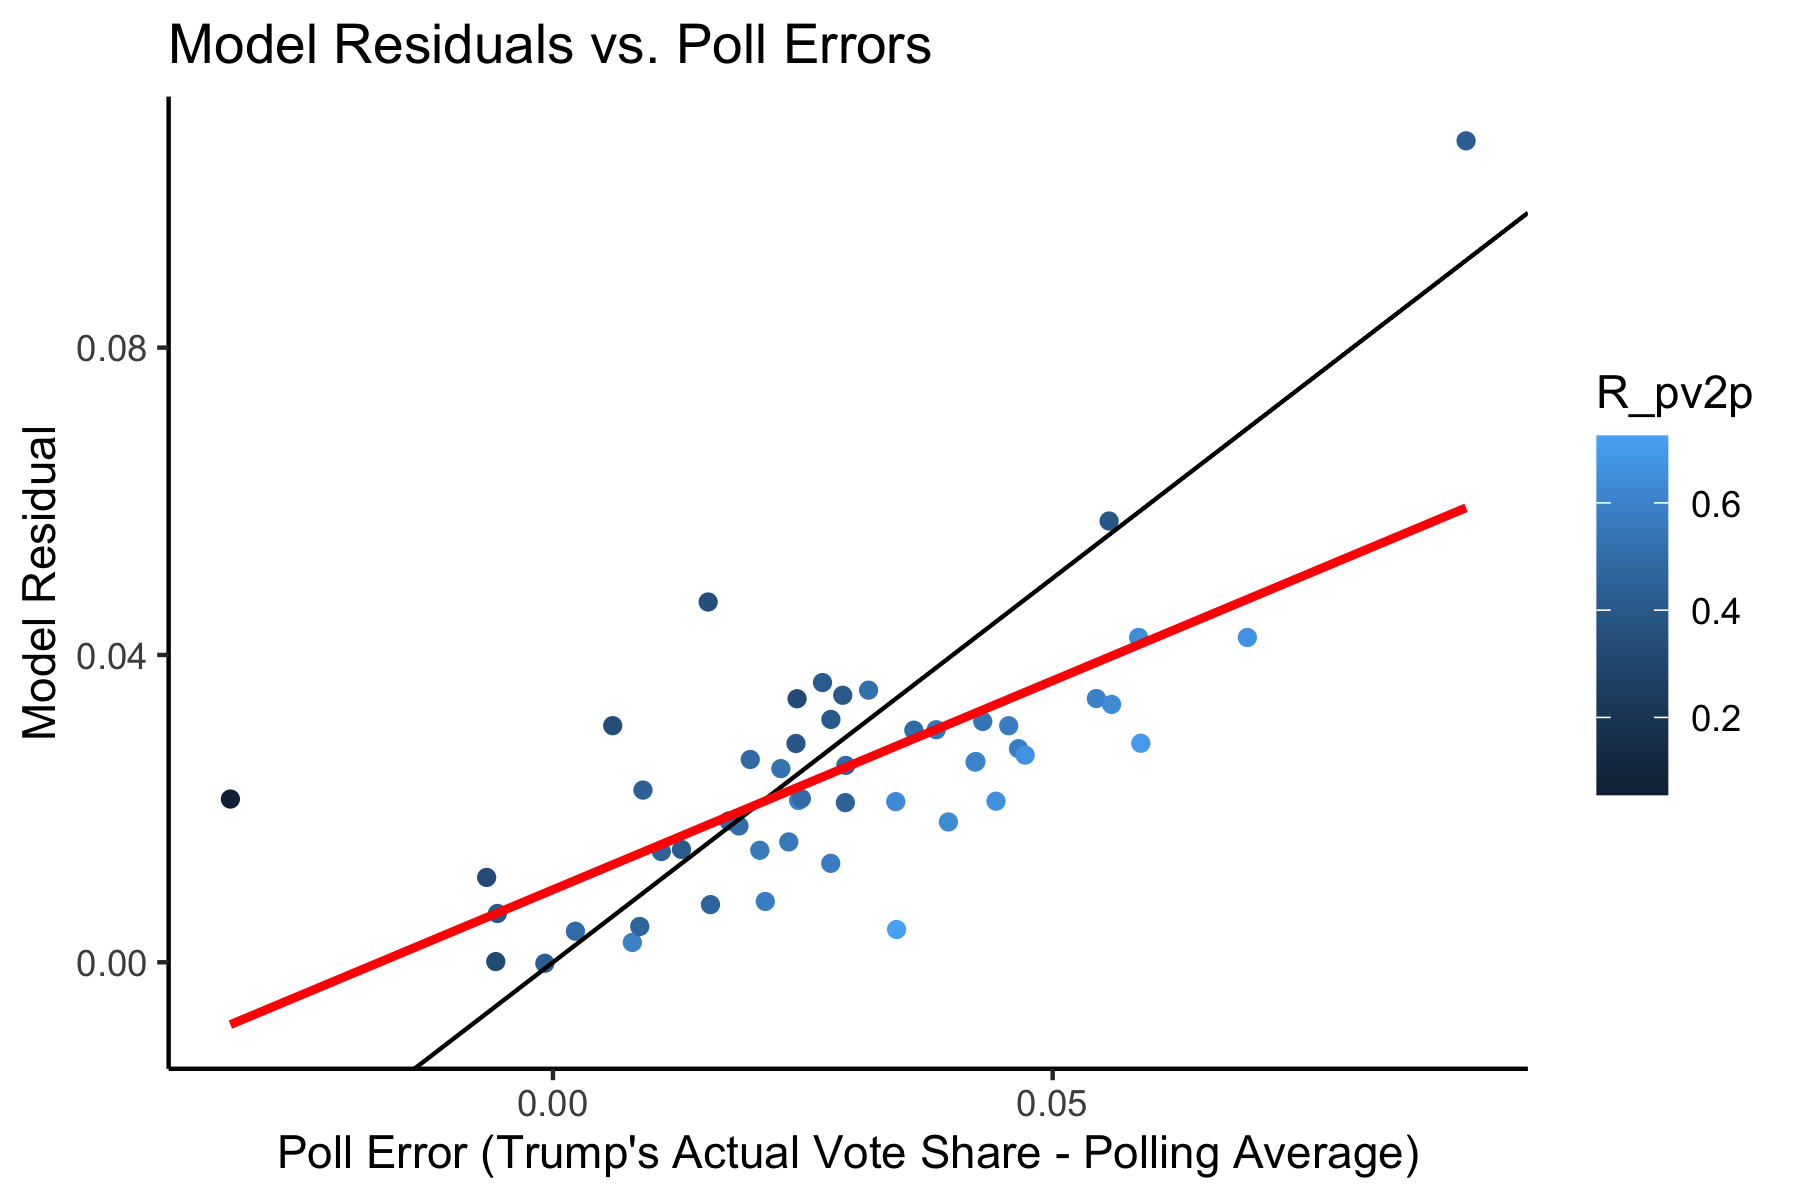 Residual vs Poll Errors